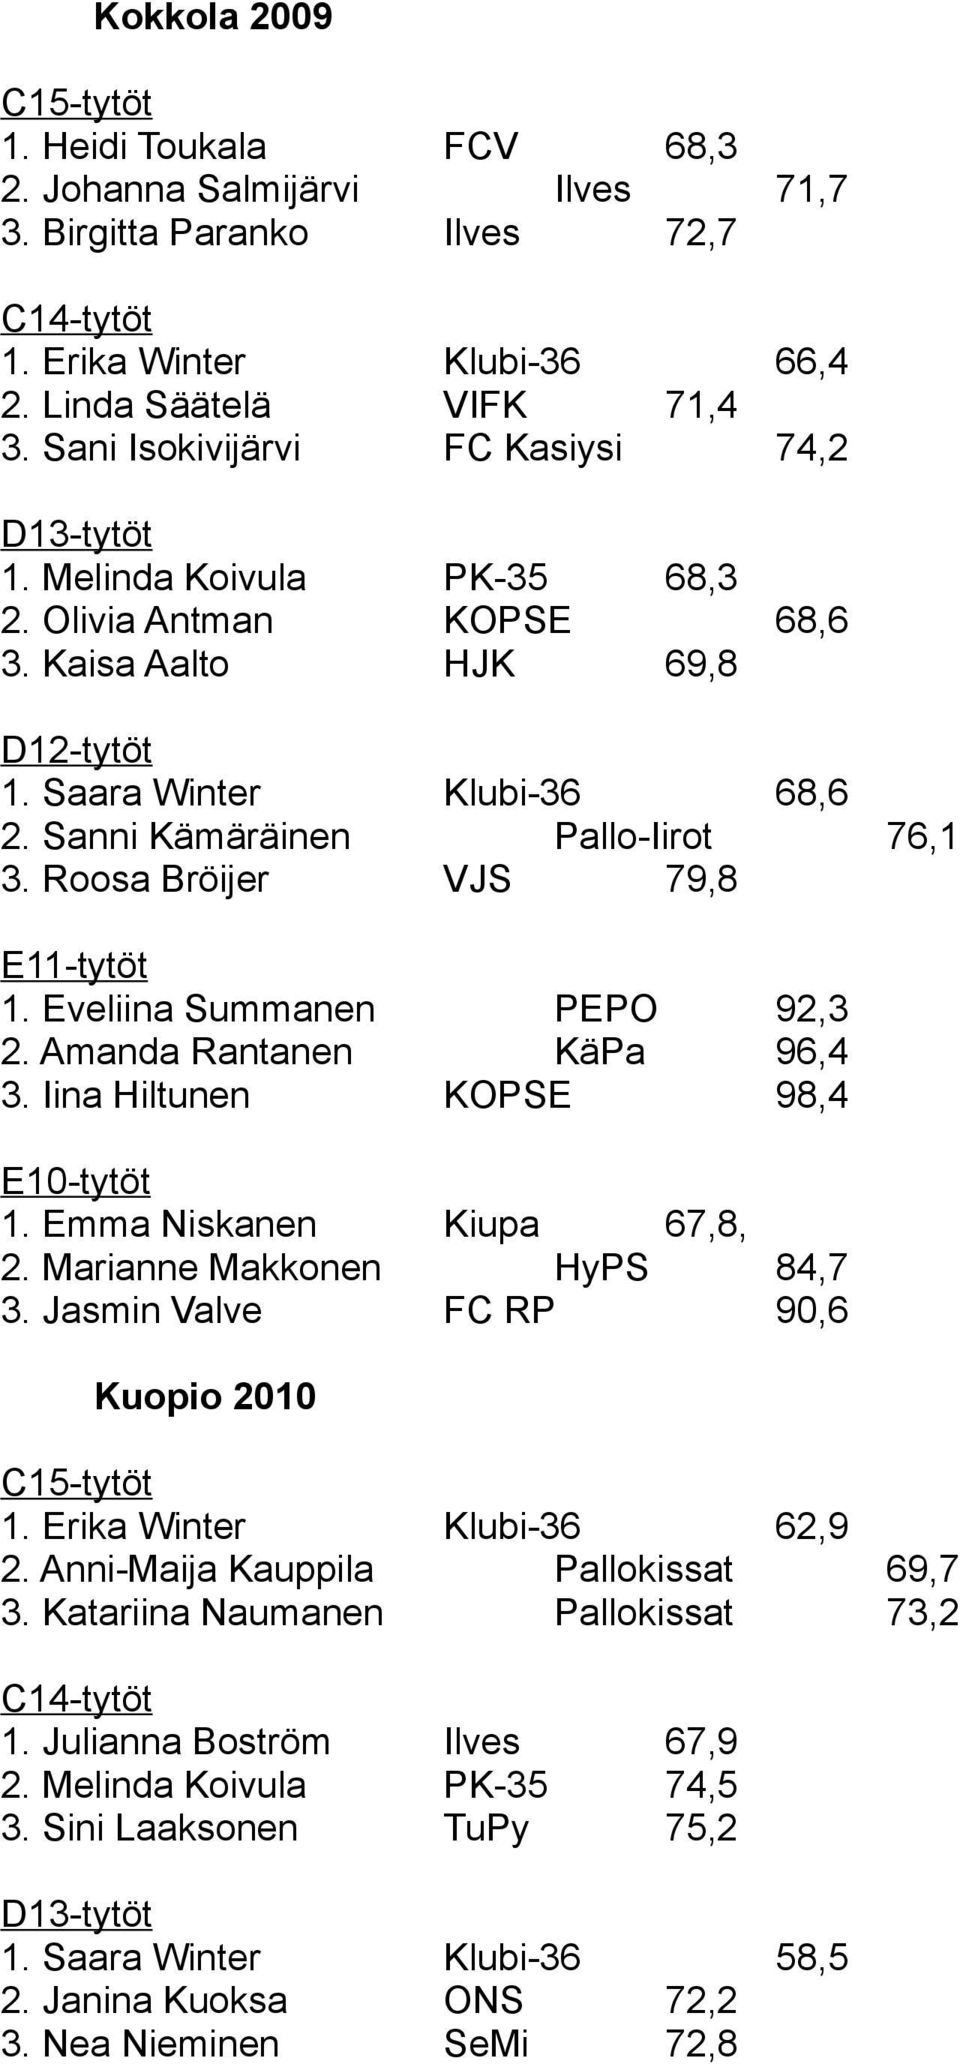 Eveliina Summanen PEPO 92,3 2. Amanda Rantanen KäPa 96,4 3. Iina Hiltunen KOPSE 98,4 E10-tytöt 1. Emma Niskanen Kiupa 67,8, 2. Marianne Makkonen HyPS 84,7 3. Jasmin Valve FC RP 90,6 Kuopio 2010 1.